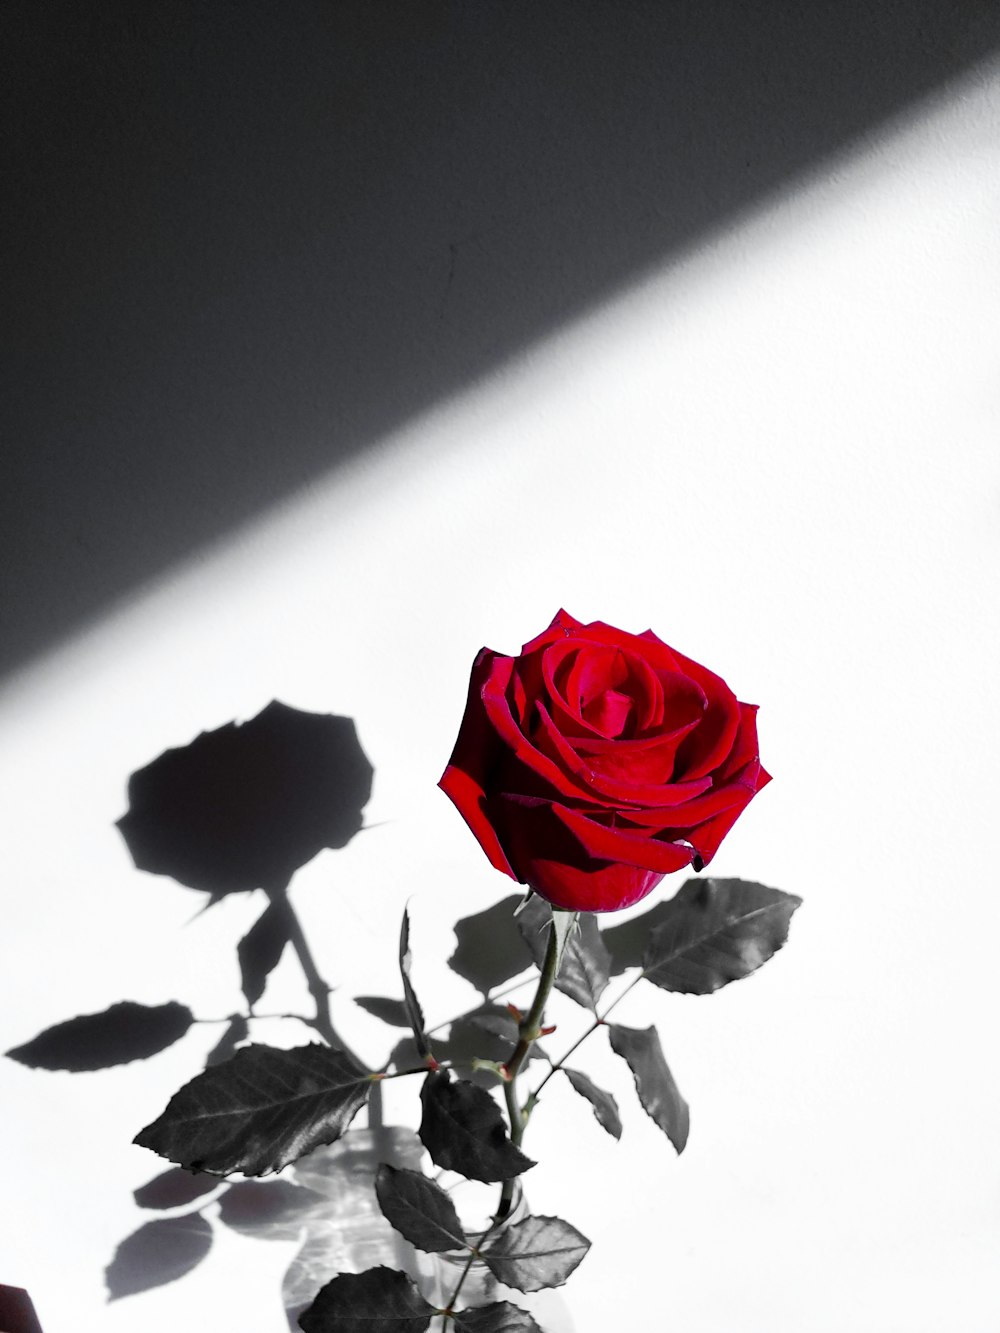 Hãy tìm hiểu về những bông hoa hồng đỏ đẹp nhất trong một bức tranh tuyệt đẹp, và cùng với hình hoa hồng đỏ đẹp mang đến một cảm giác thư giãn và hạnh phúc khi nhìn thấy. Hãy nghỉ ngơi, tưởng tượng, và chiêm ngưỡng sự trân quí của loài hoa này.